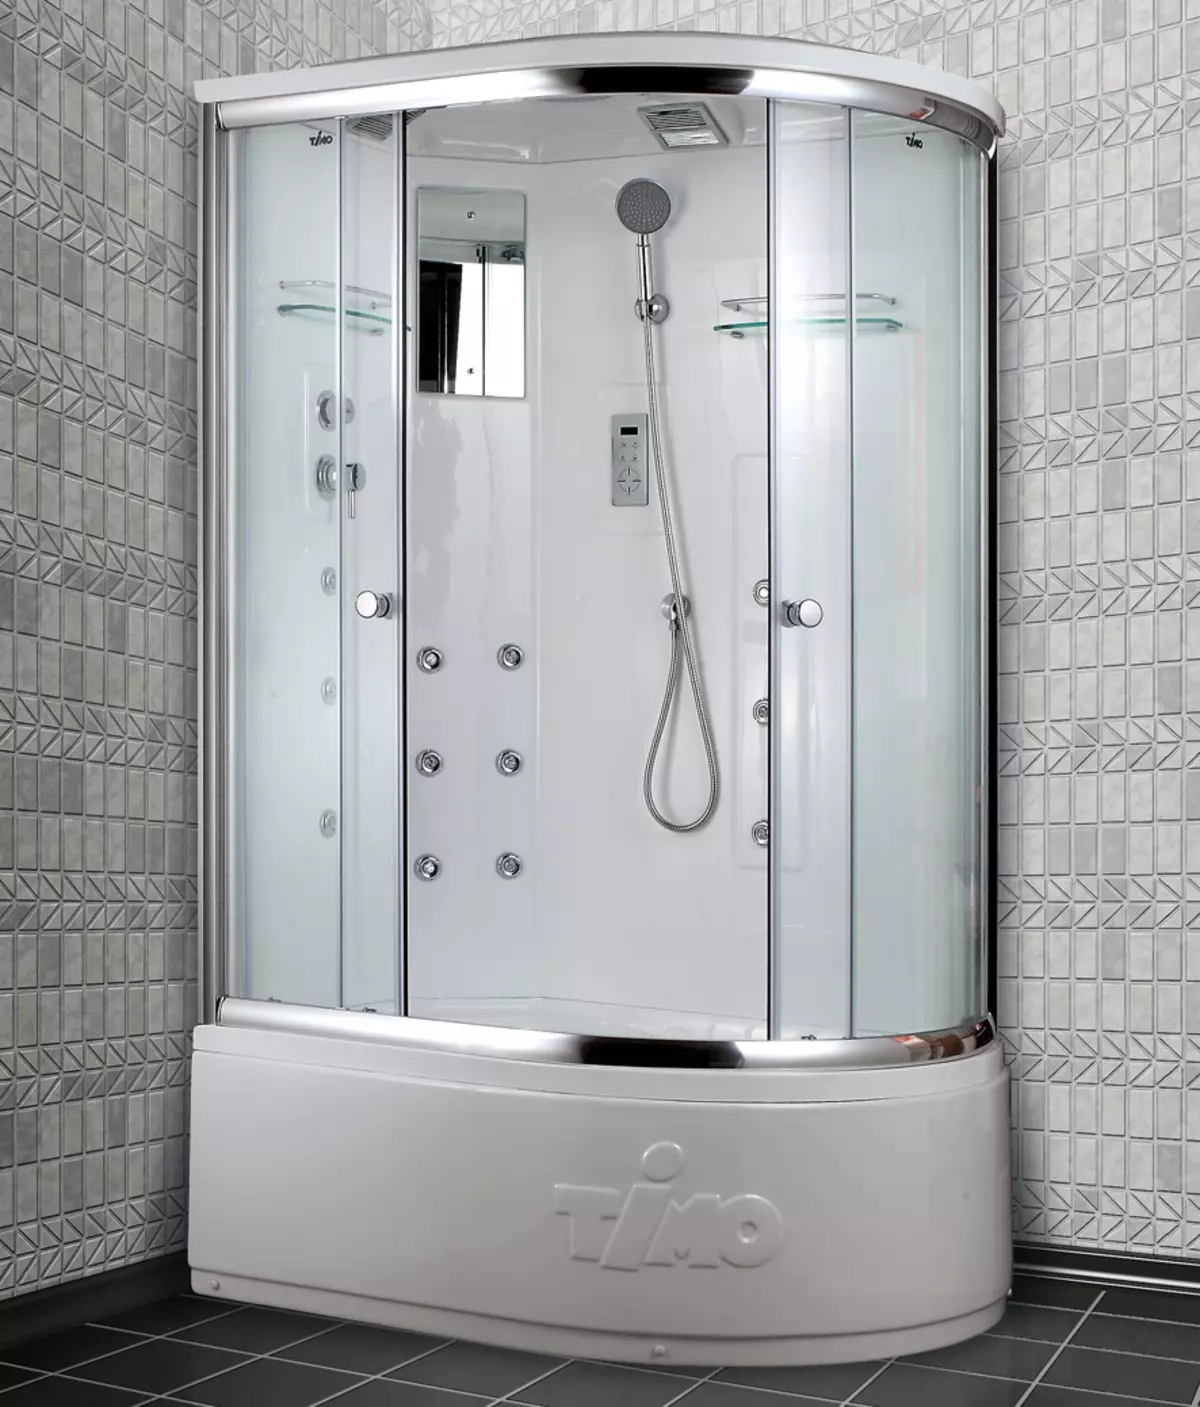 Kabina finlandeze dush: 80x80, 90x90 cm dhe dimensione të tjera të modeleve, markave deto dhe të tjerëve nga Finlanda 10327_2